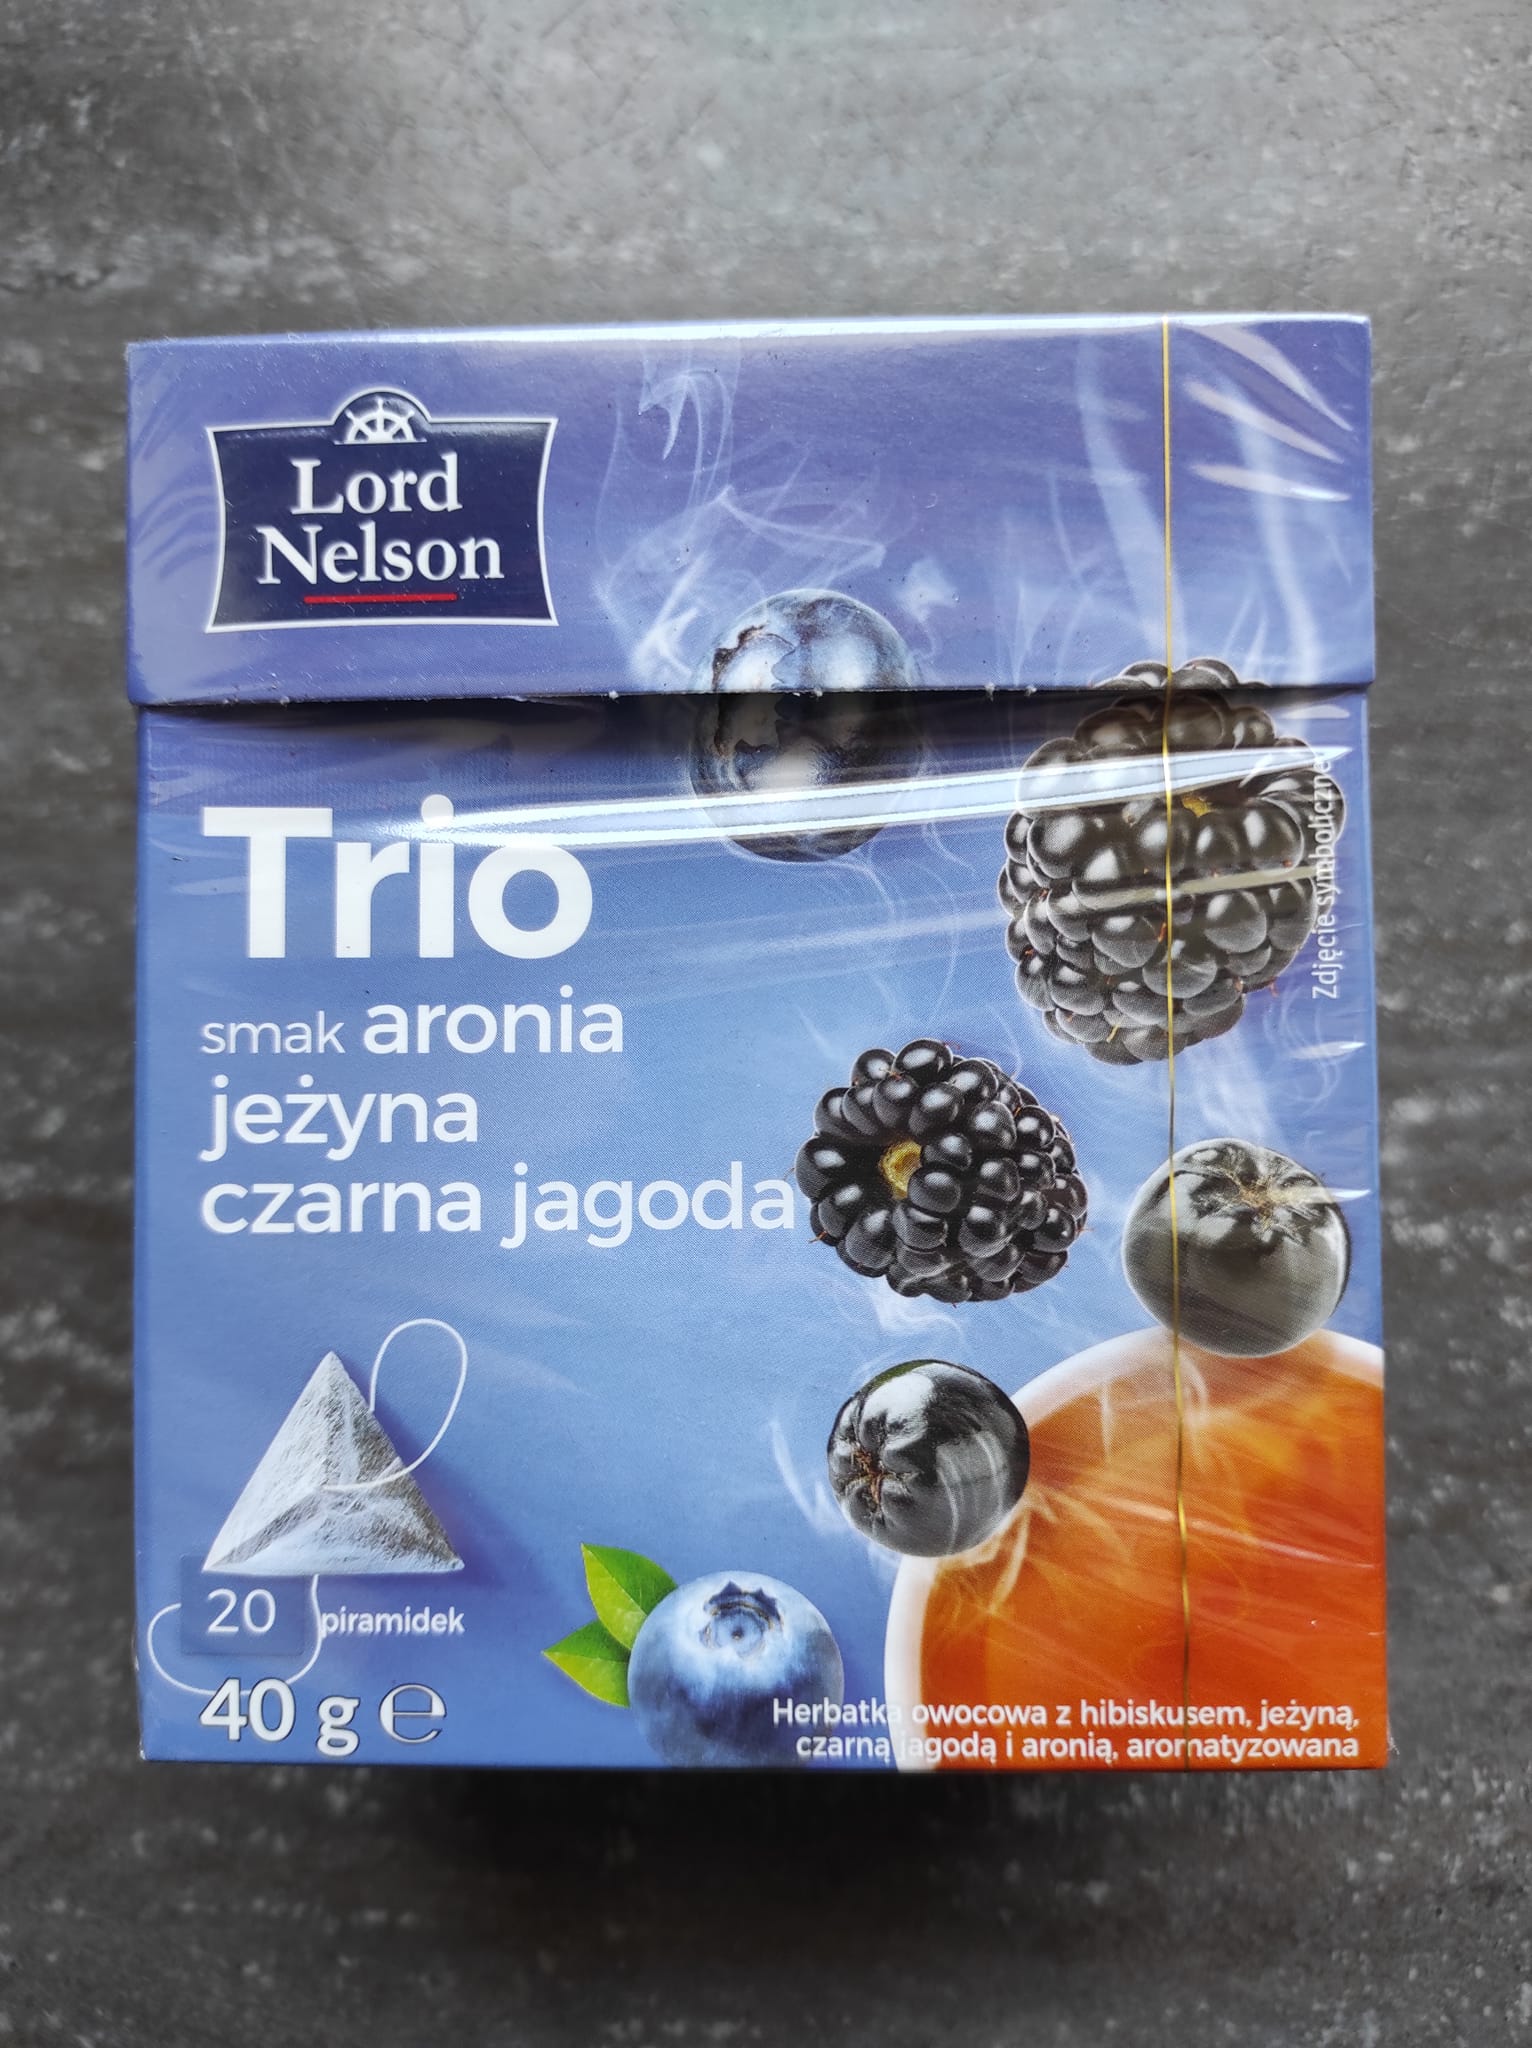 Herbatka Trio aronia, jeżyna, czarna jagoda – Lord Nelson 4 (1)